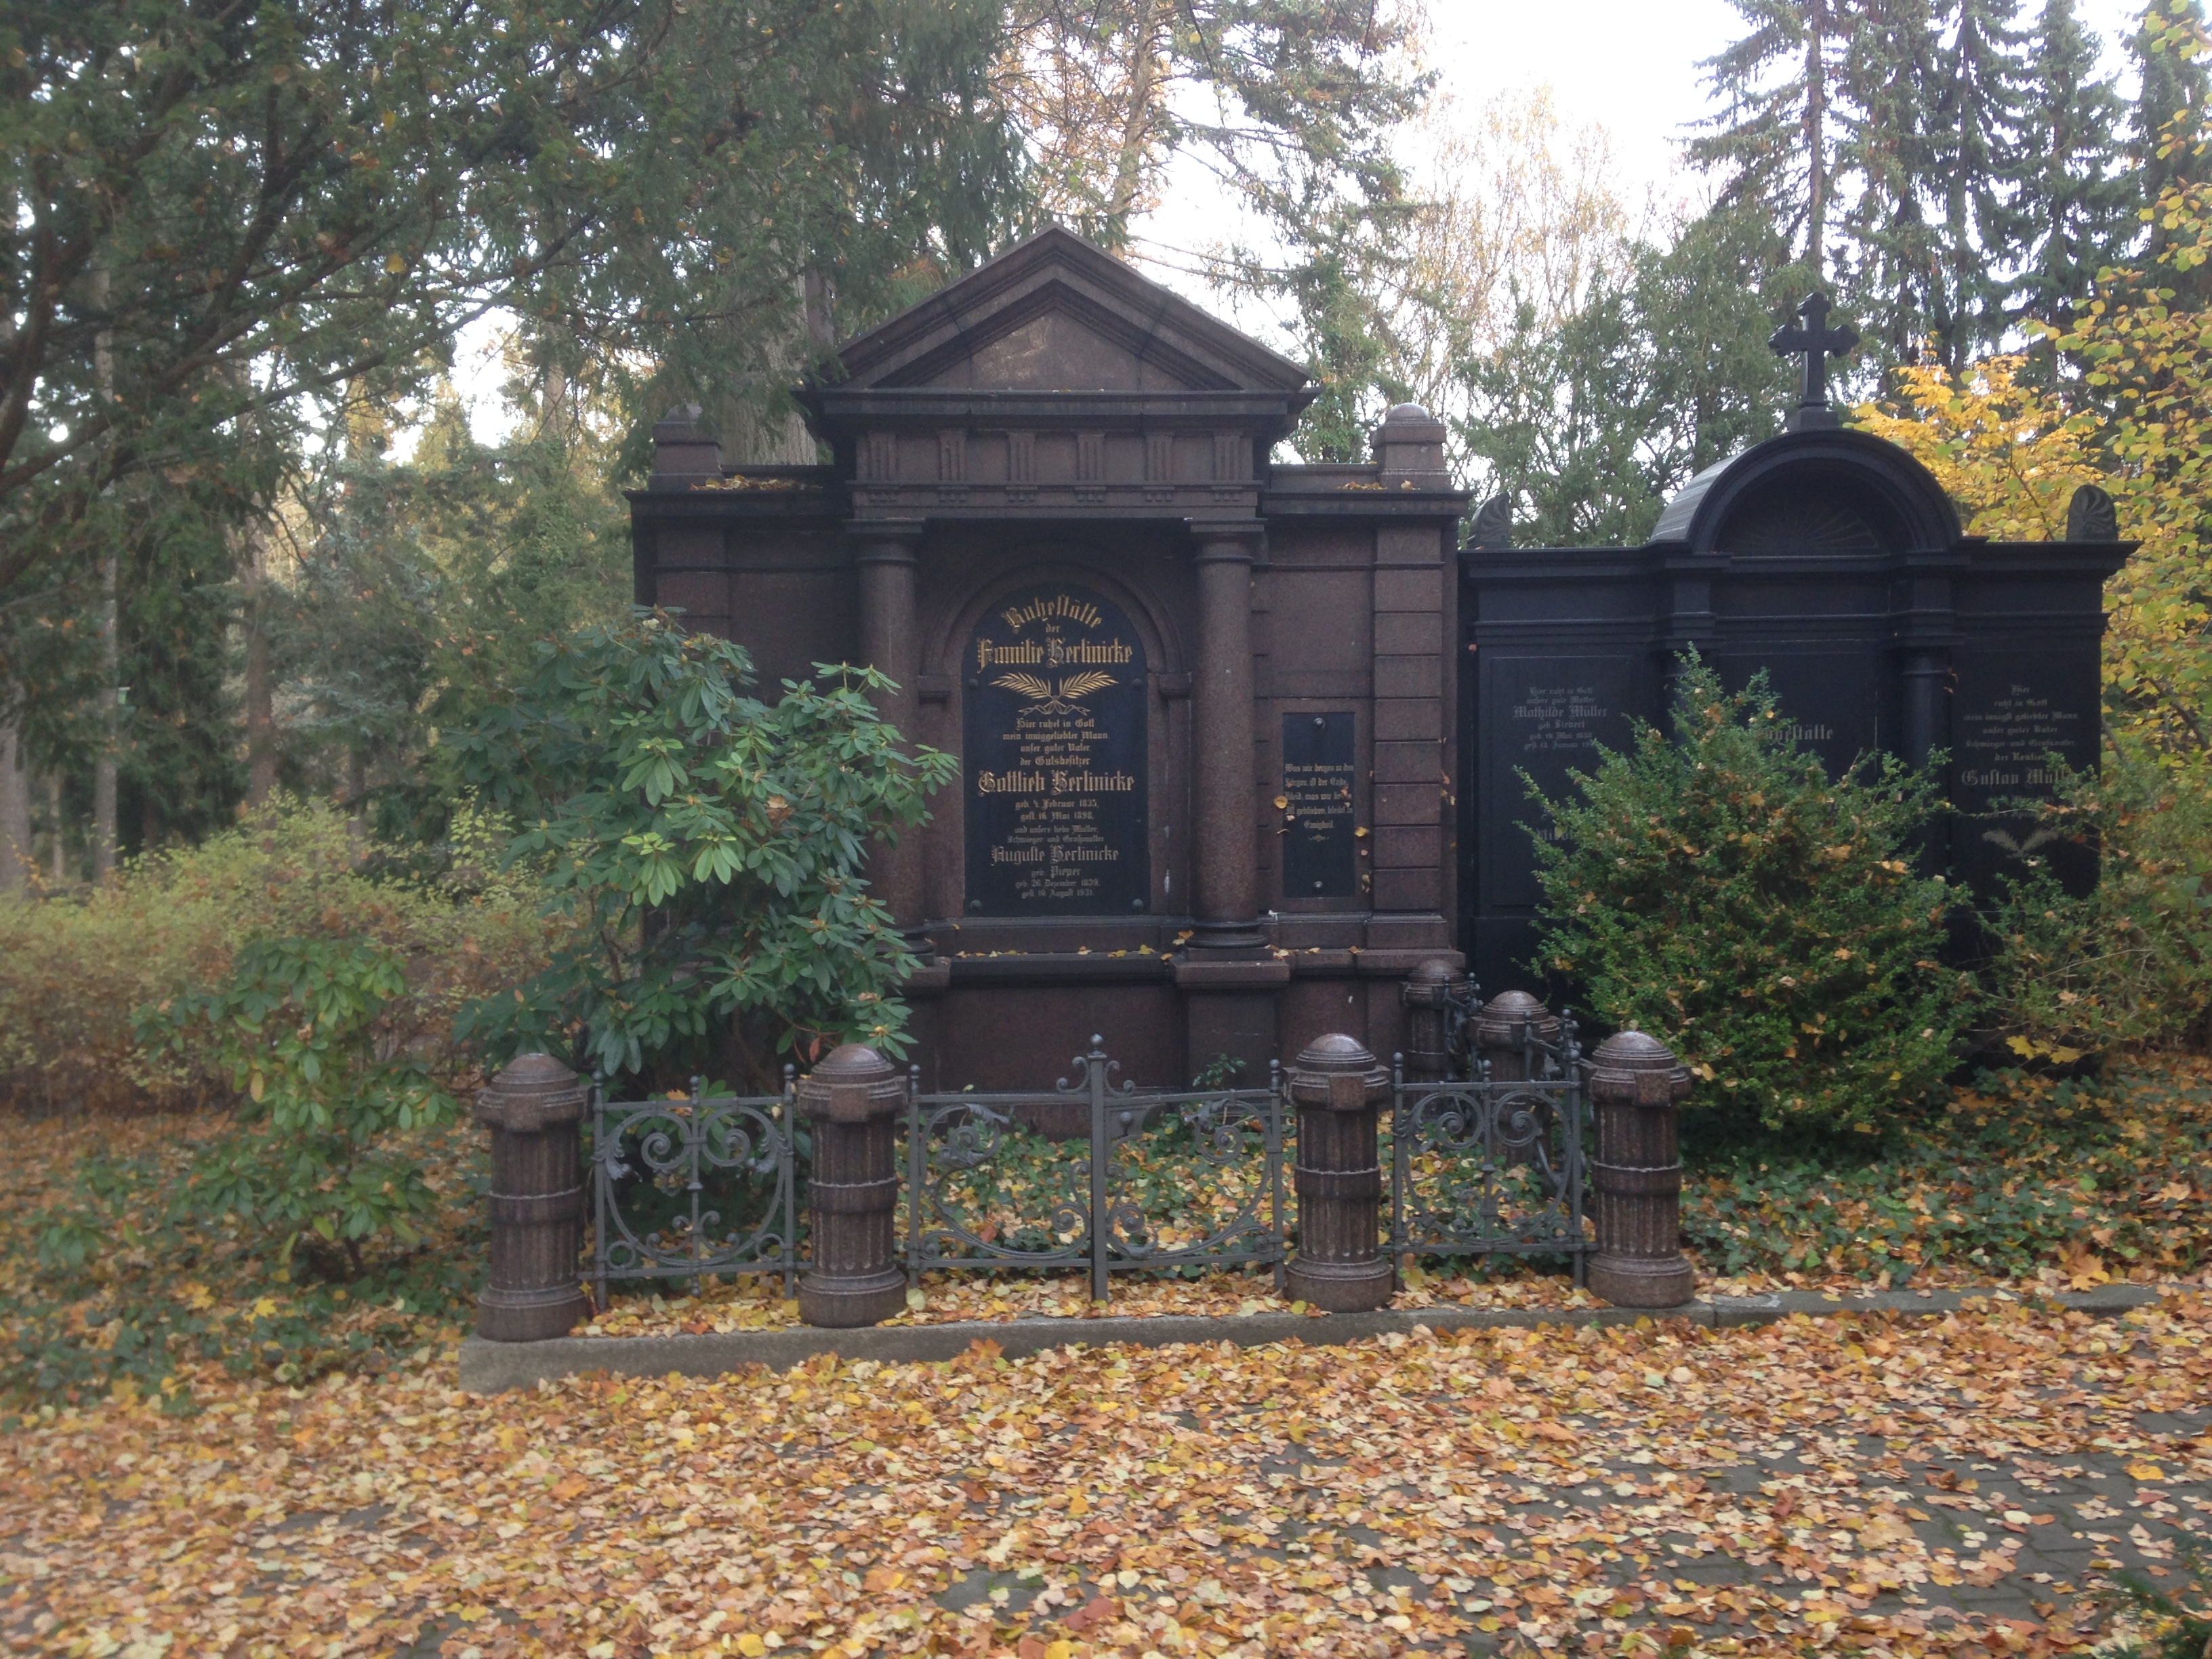 Grabstein Auguste Berlinicke, geb. Pieper, Friedhof Steglitz, Berlin